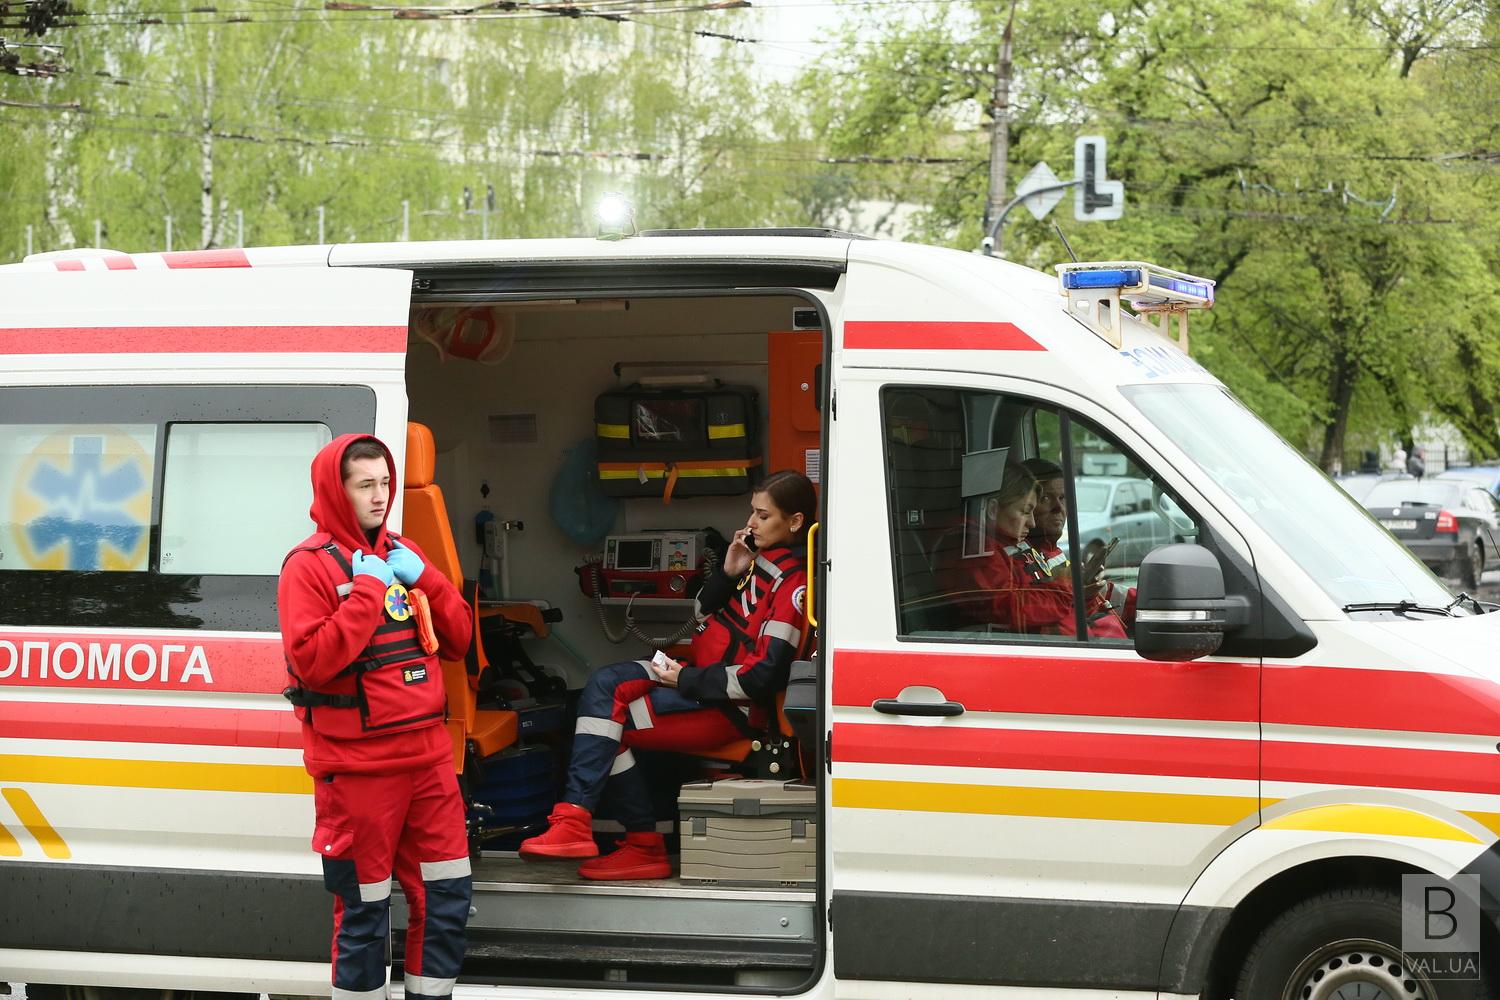  Ще 10 людей перебувають у важкому стані після ракетного удару по Чернігову 17 квітня 